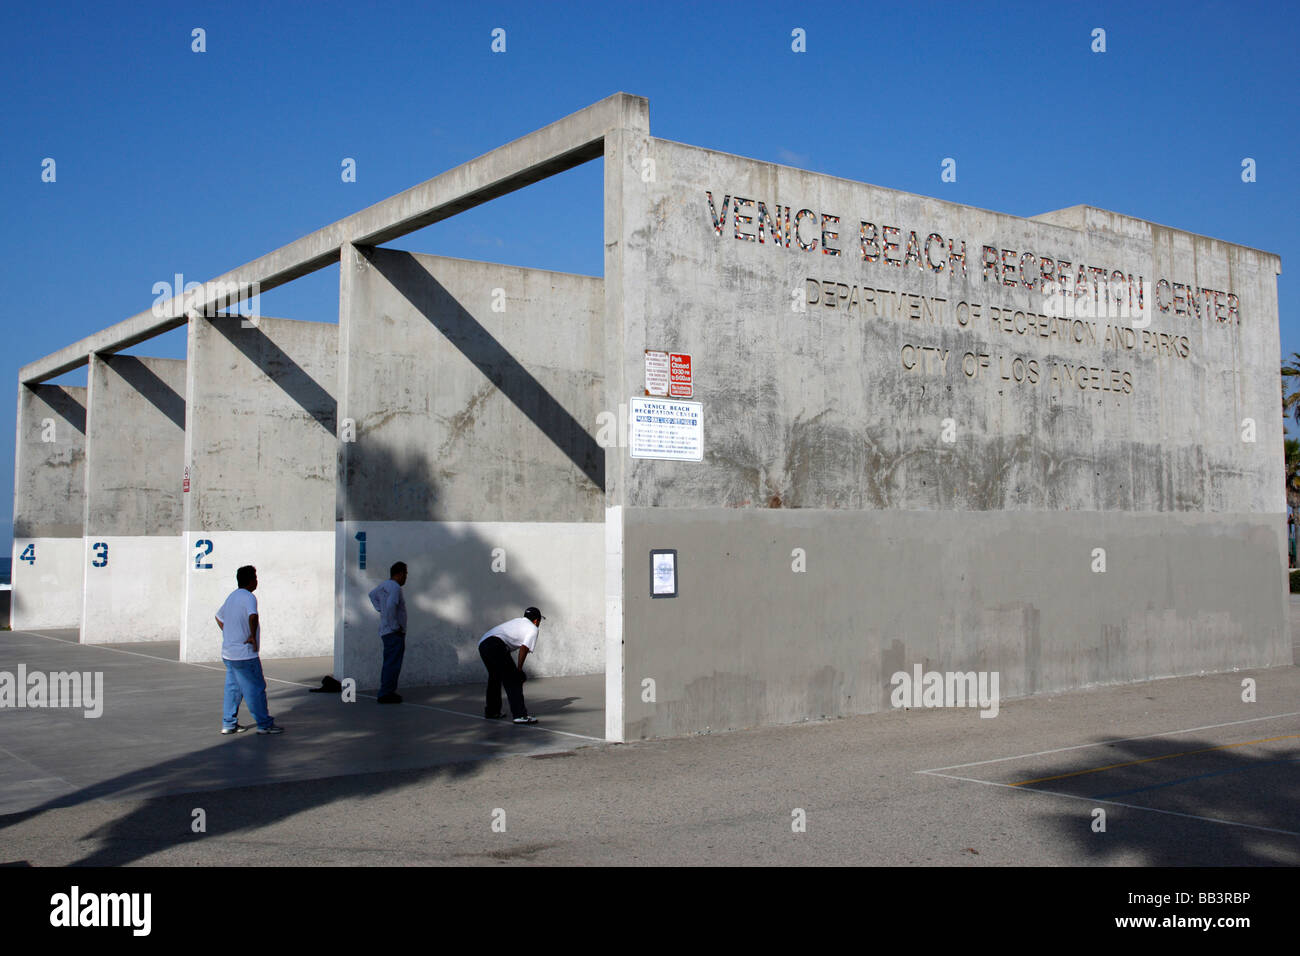 Venice Beach Freizeit center Los Angeles Kalifornien usa Stockfoto